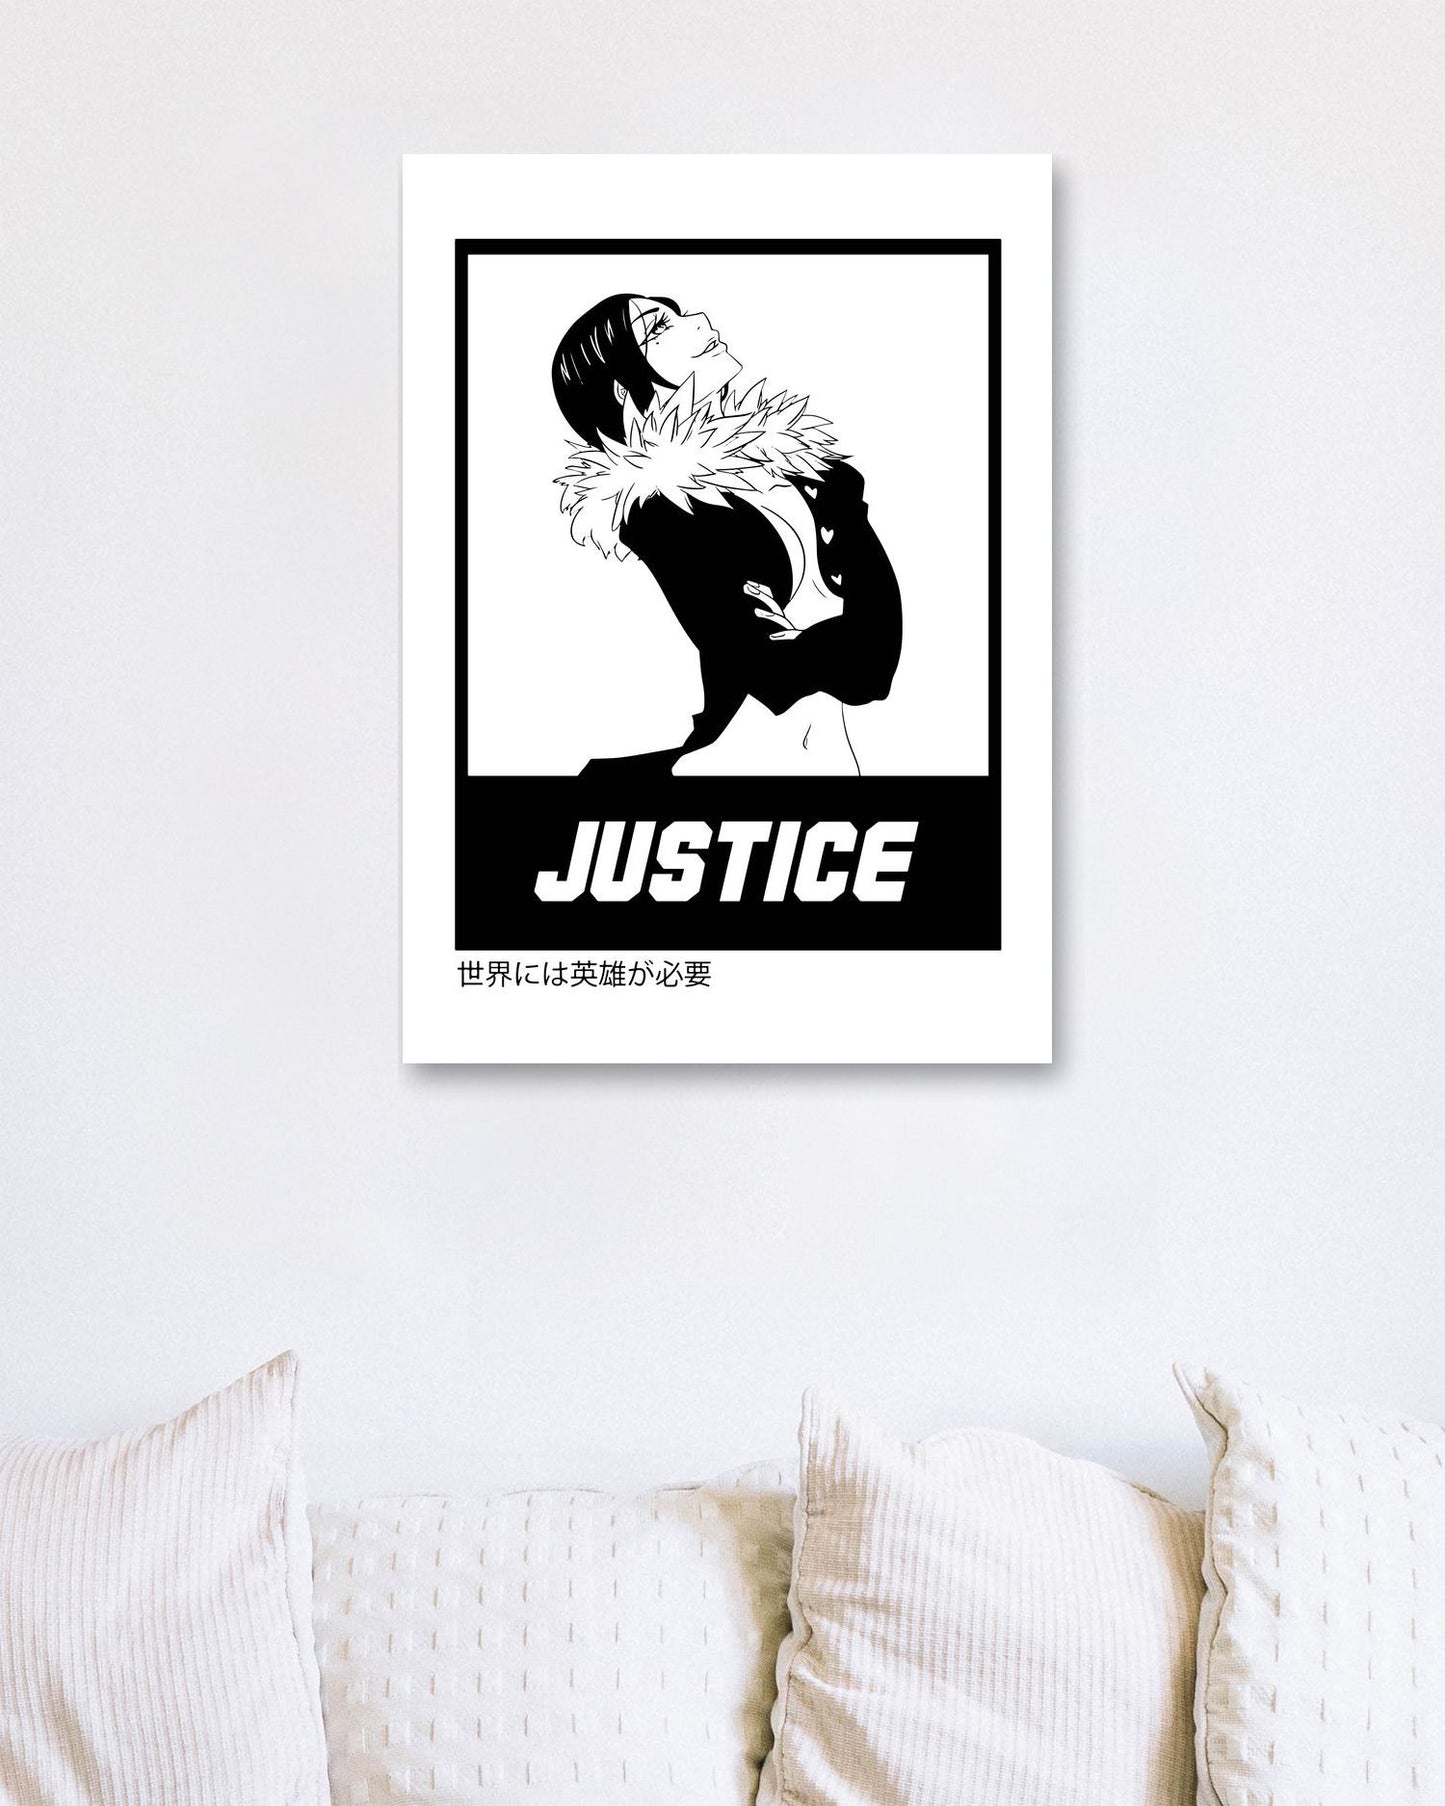 Justice 16 - @FreakCreator